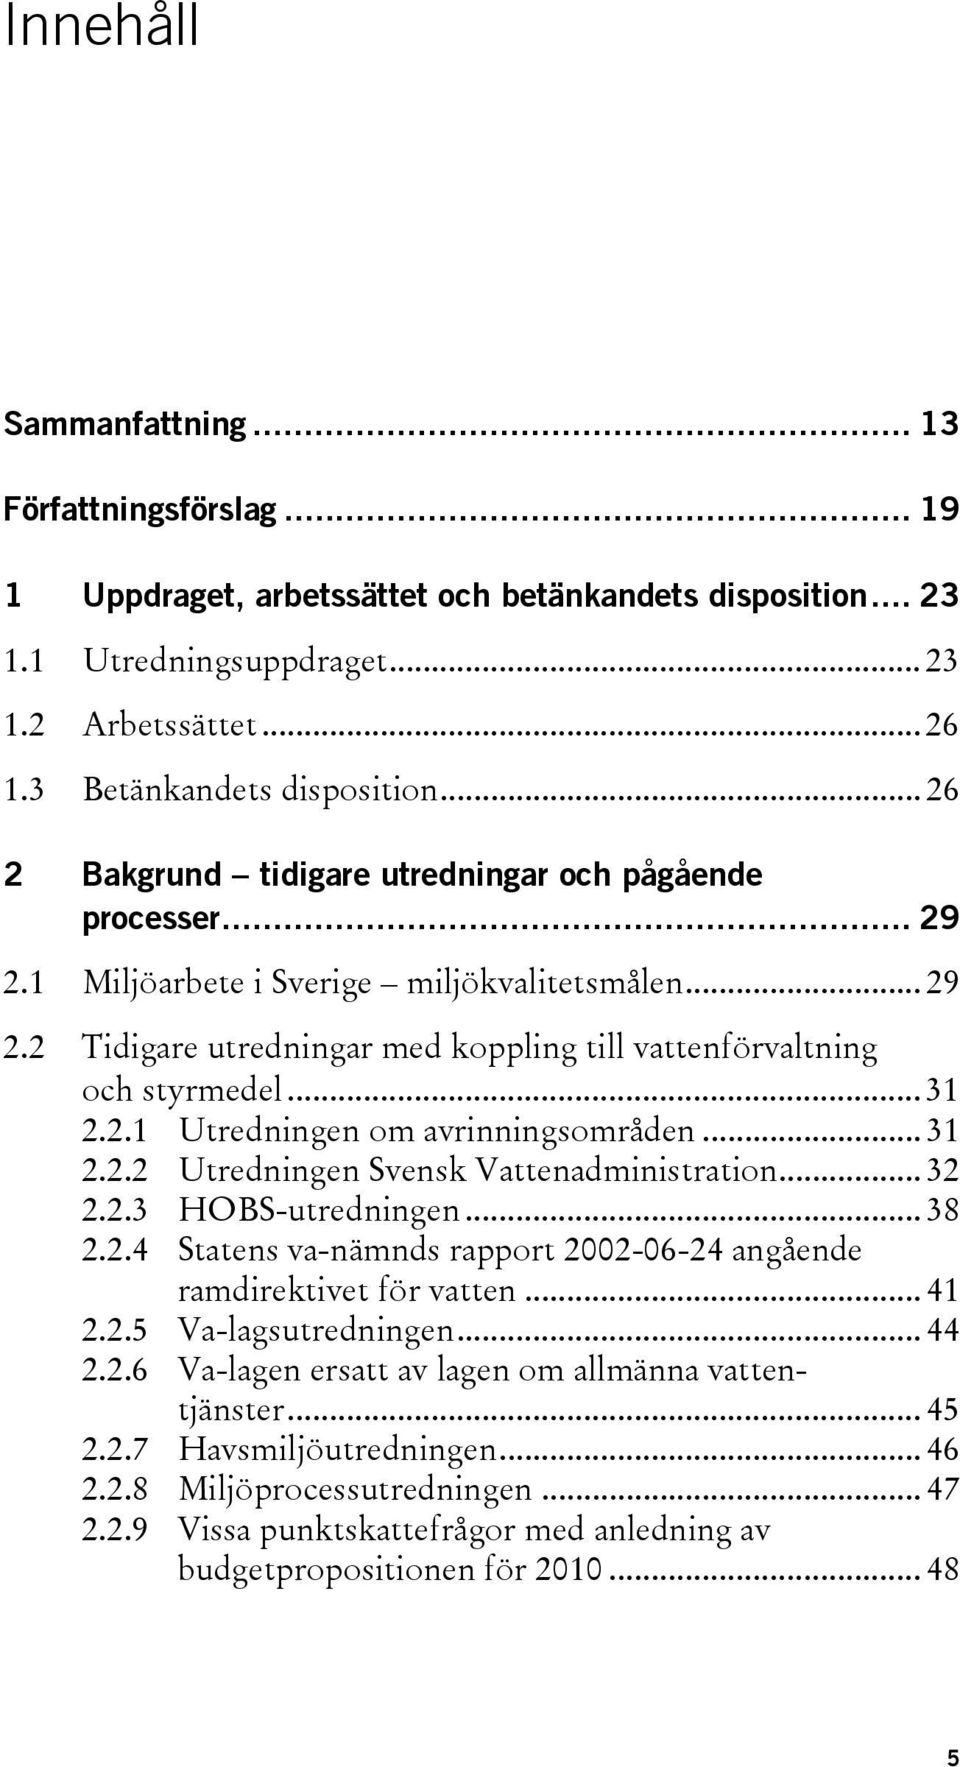 2.1 Utredningen om avrinningsområden... 31 2.2.2 Utredningen Svensk Vattenadministration... 32 2.2.3 HOBS-utredningen... 38 2.2.4 Statens va-nämnds rapport 2002-06-24 angående ramdirektivet för vatten.